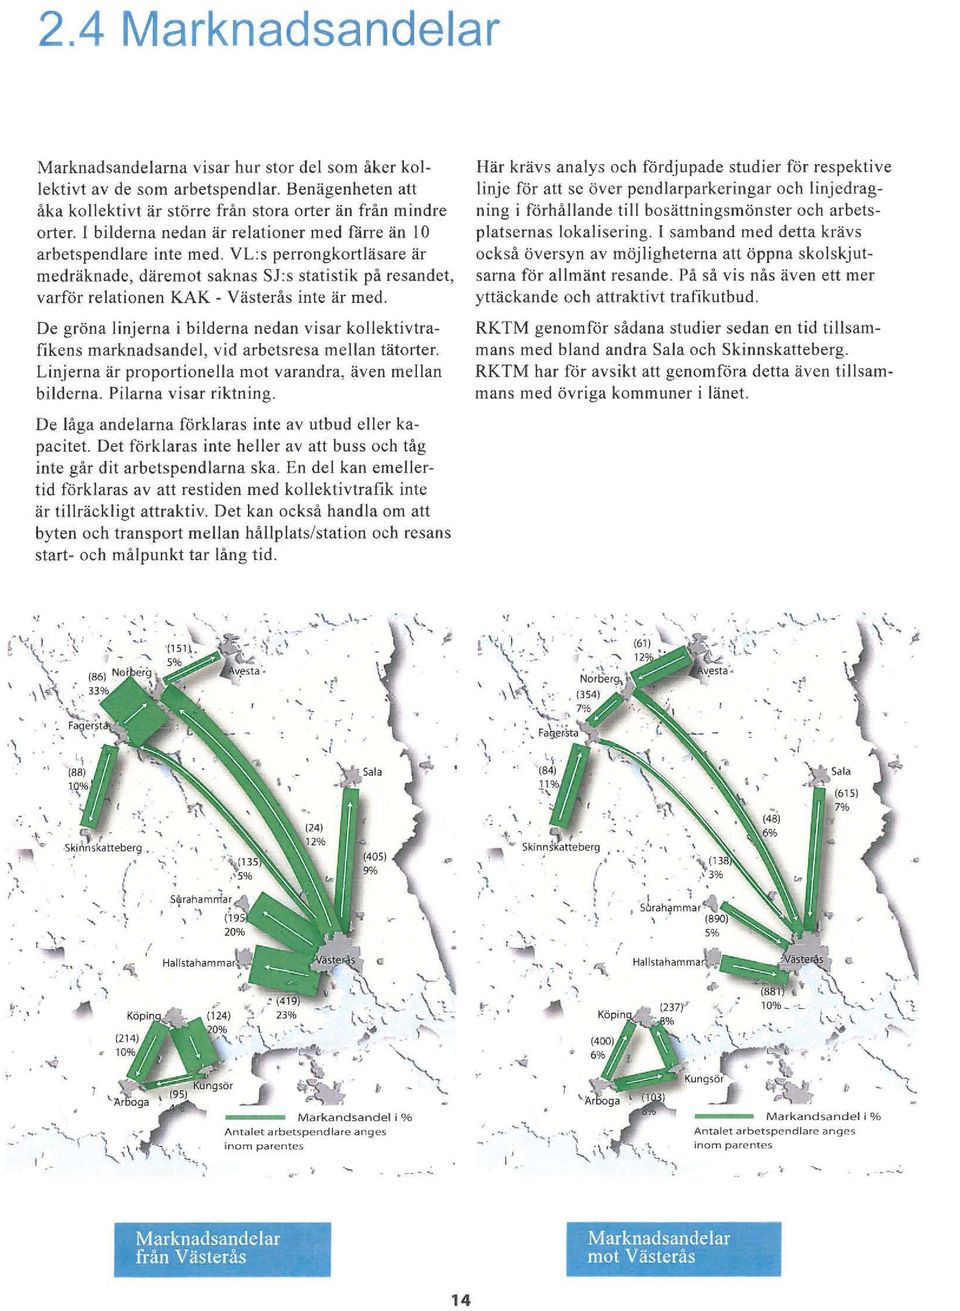 De gröna linjerna i bilderna nedan visar kollektivtrafikens marknadsandel, vid arbetsresa mellan tätorter. Linjerna är proportionella mot varandra, även mellan bilderna. Pilarna visar riktning.